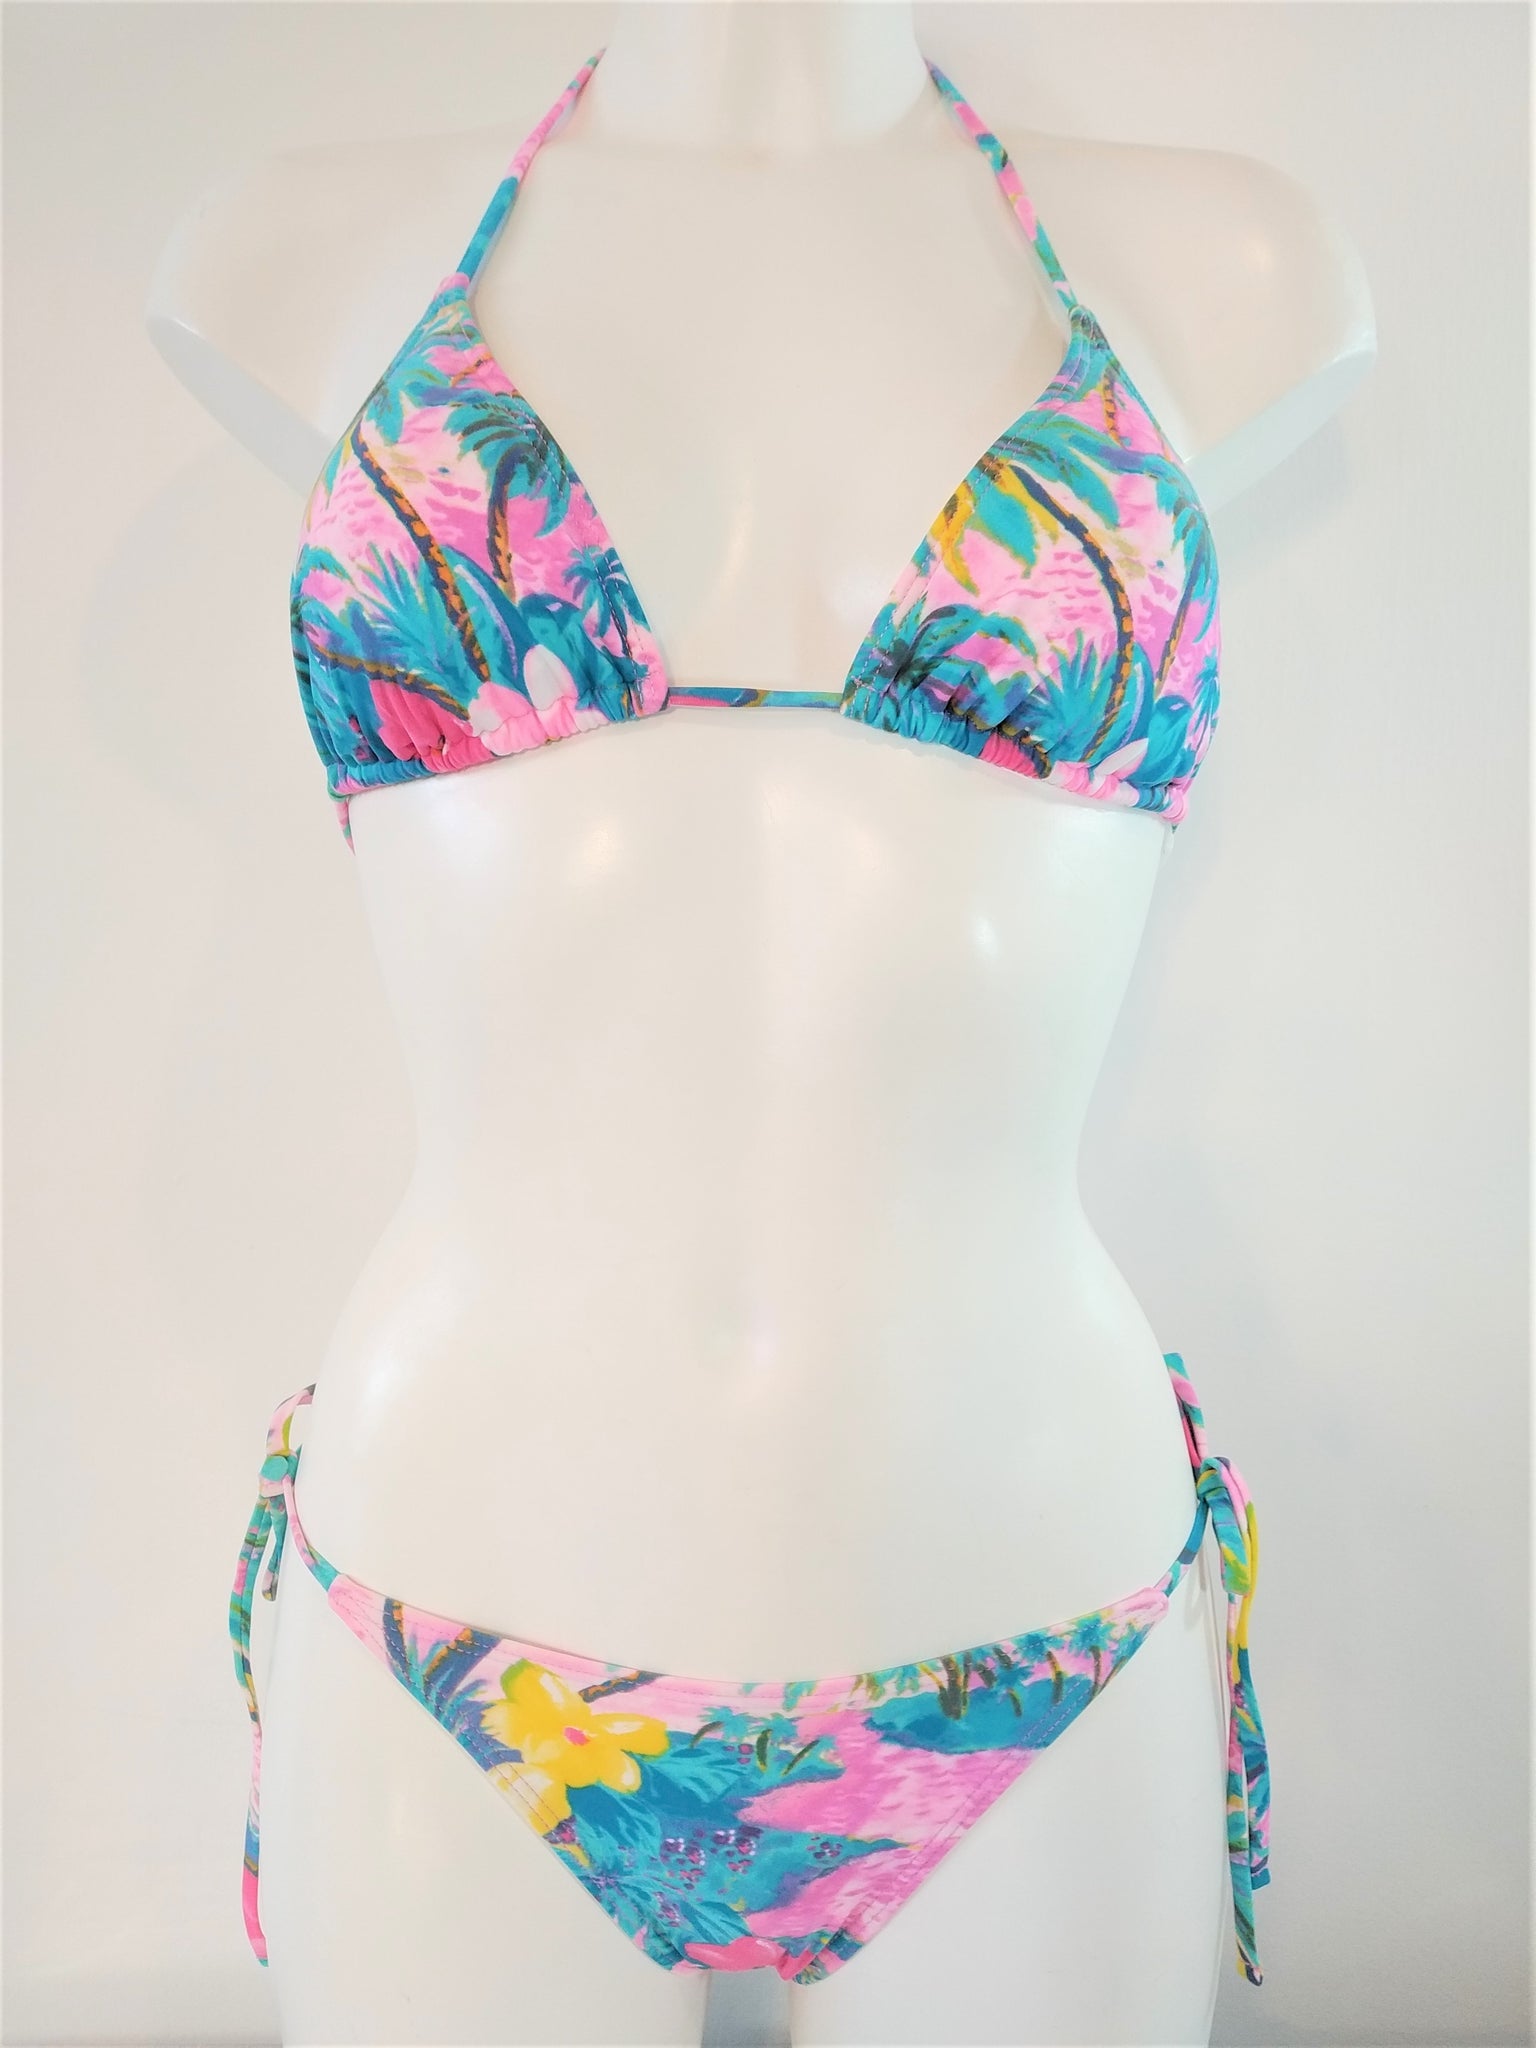 bikinn-low cut tie sides bikini bottom colorful, bas de maillot attaches sur cote multicolor, traje de baño bragas atadas a los lados